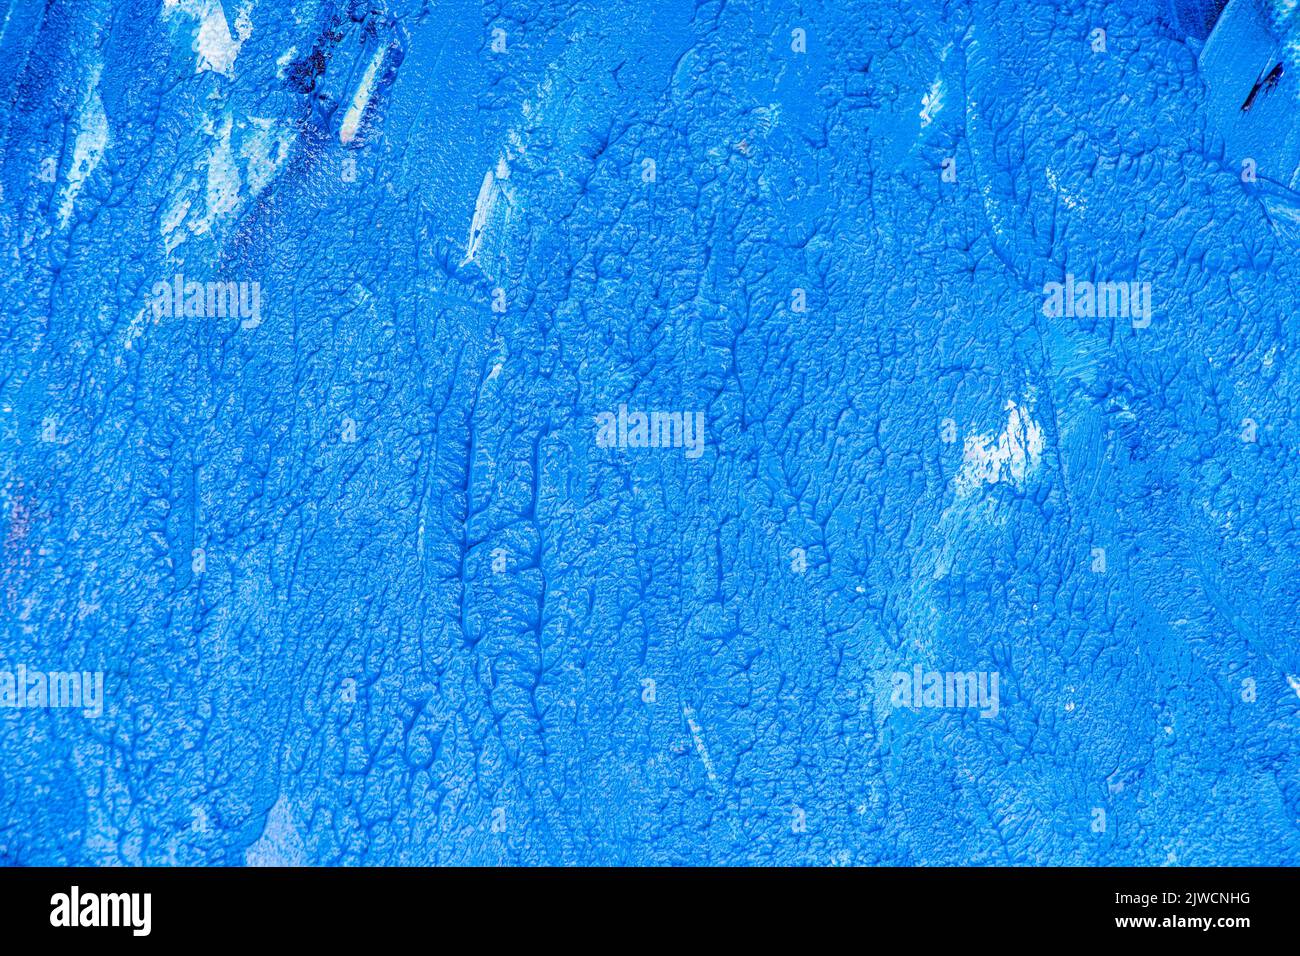 Une texture de peinture à l'huile bleue et blanche - arrière-plan marin Banque D'Images